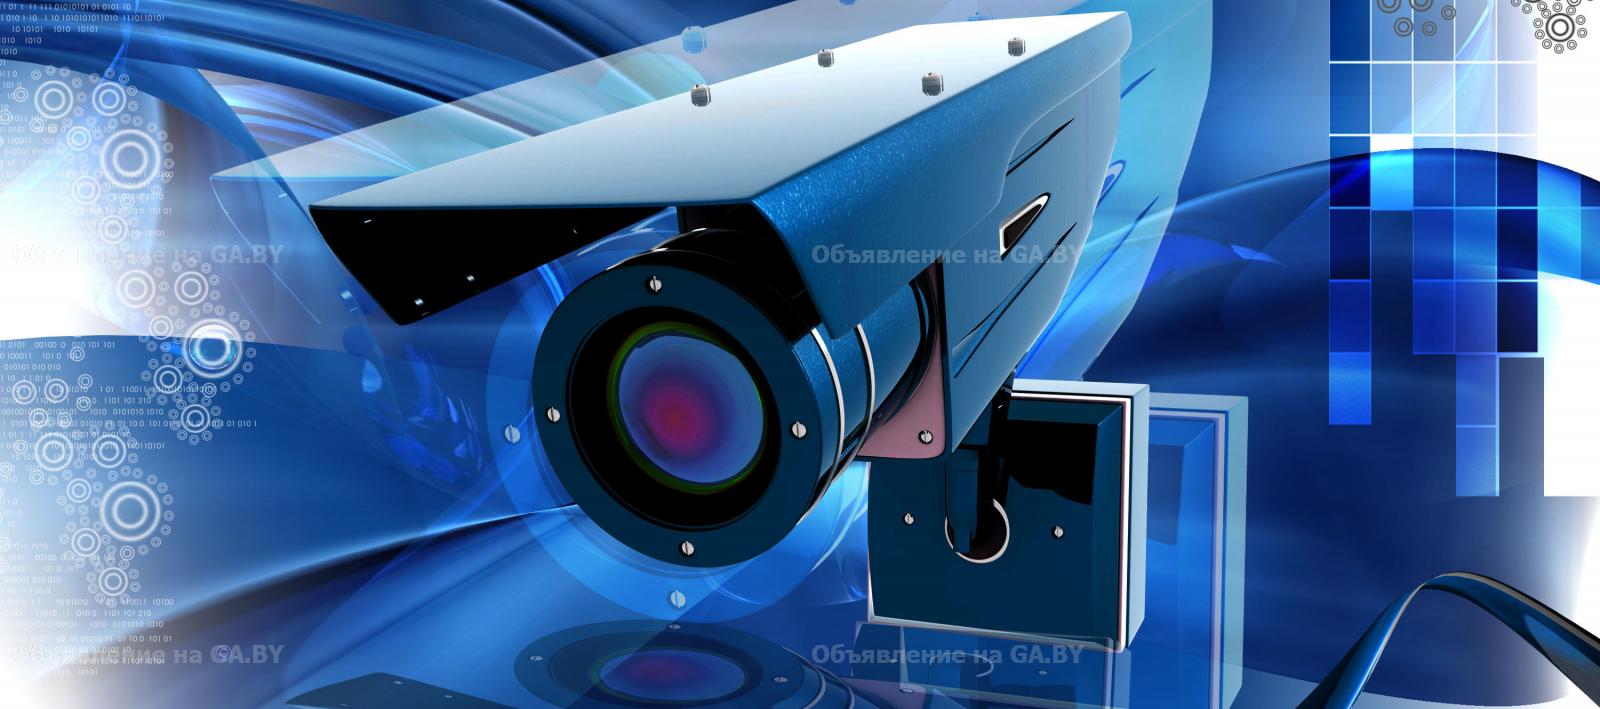 Продам НВА системы видеонаблюдения - GA.BY